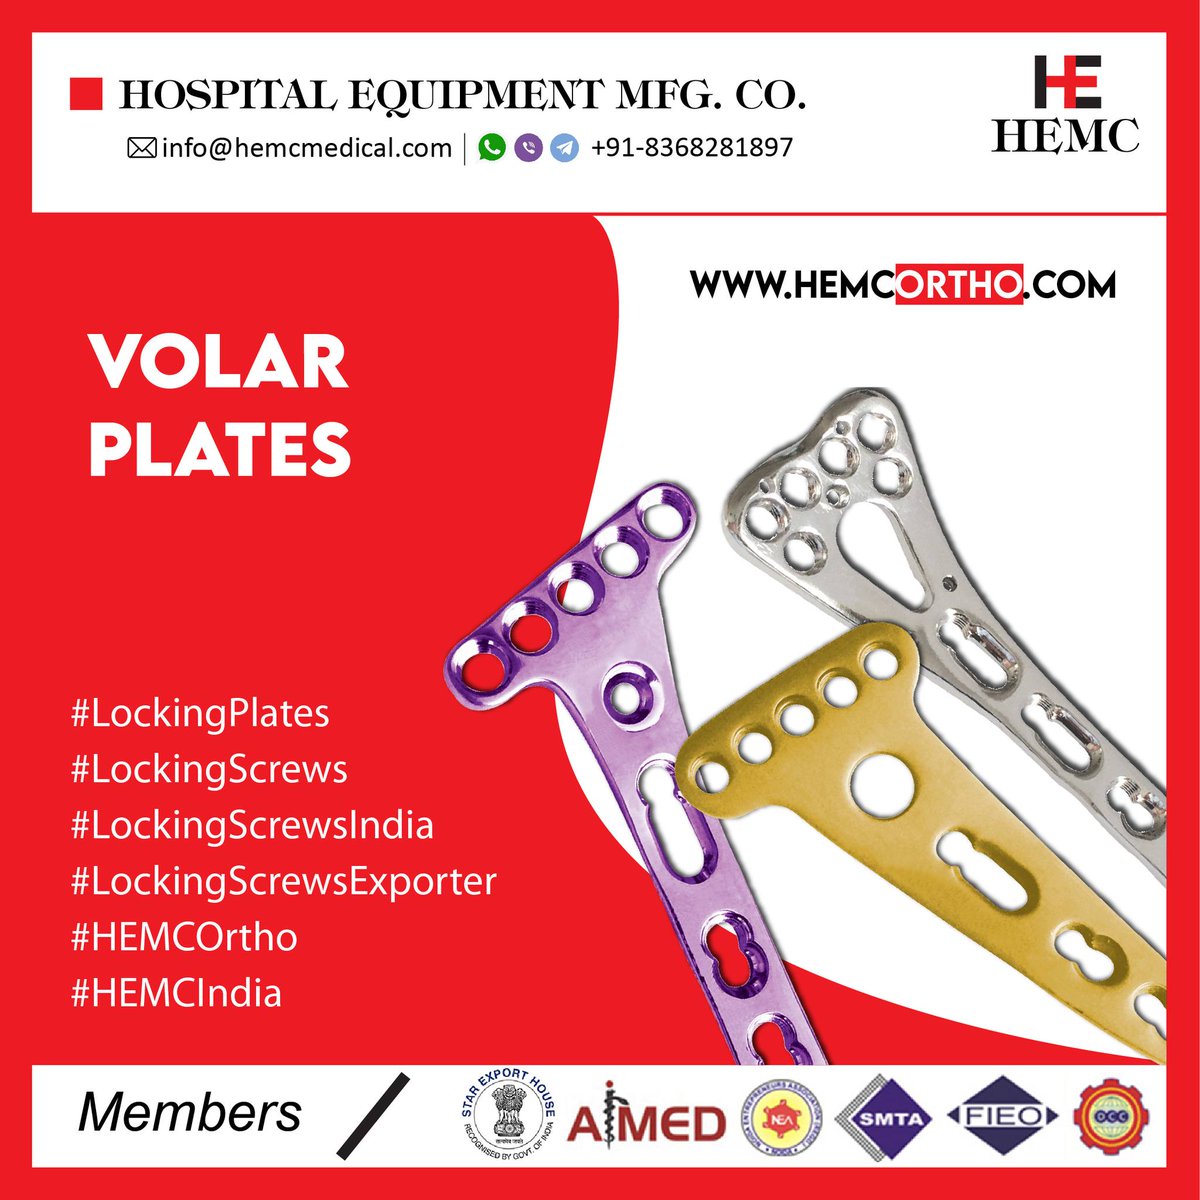 #volarplates #lockingplate #lockingscrew #orthopedicplates #ortho #orthopedics #orthopedicsurgery #orthopedicsurgeon #orthopedicequipment #orthopedicinstruments #orthopedicdevices #orthodontics #orthodontist #prosthesis #neurologist #manufacturer #exportquality #india #hemcortho